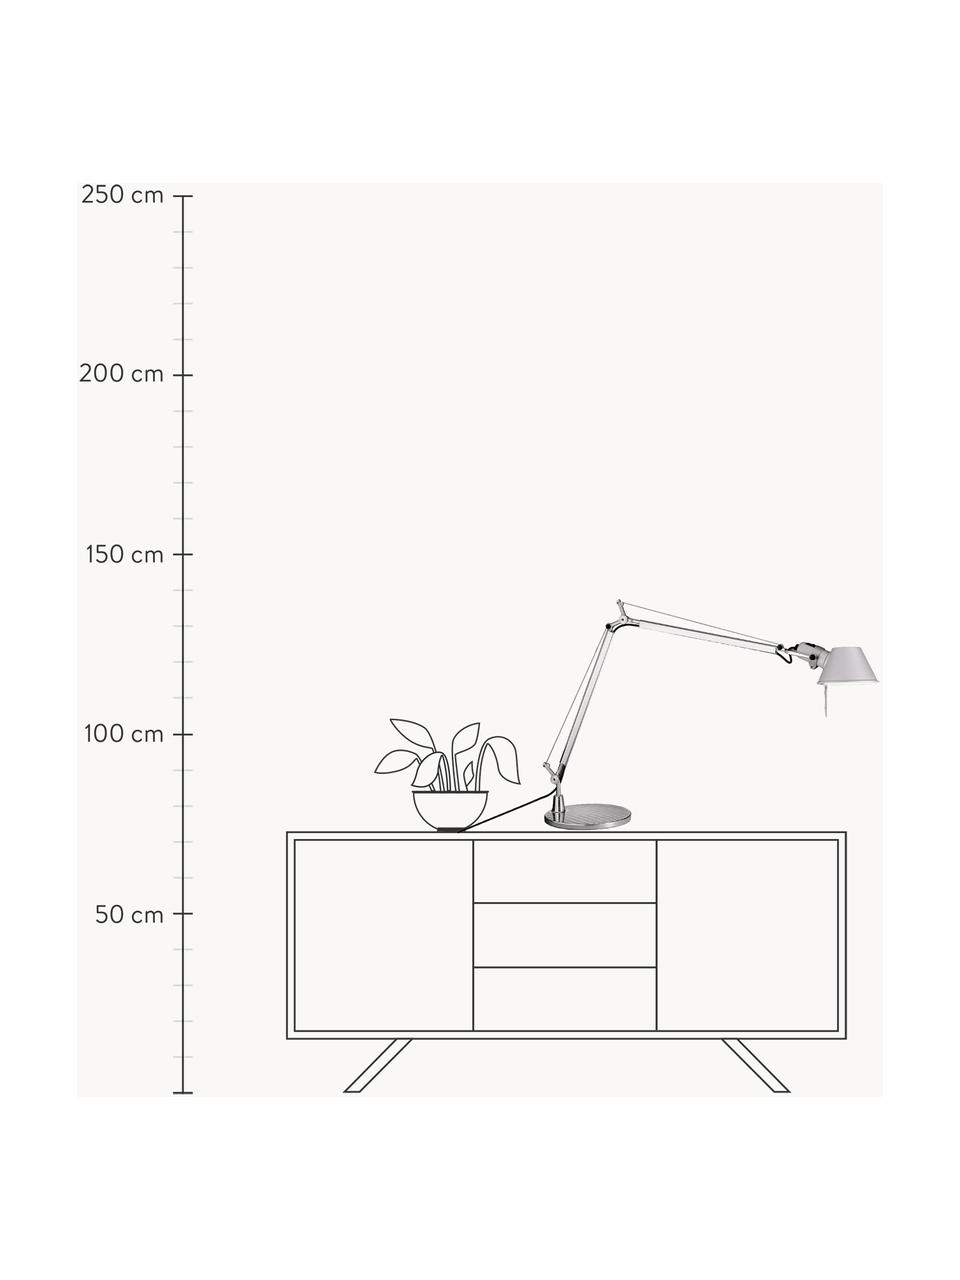 Lampa biurkowa Tolomeo, Stelaż: aluminium powlekane, Odcienie srebrnego, S 78 x W 65 - 129 cm